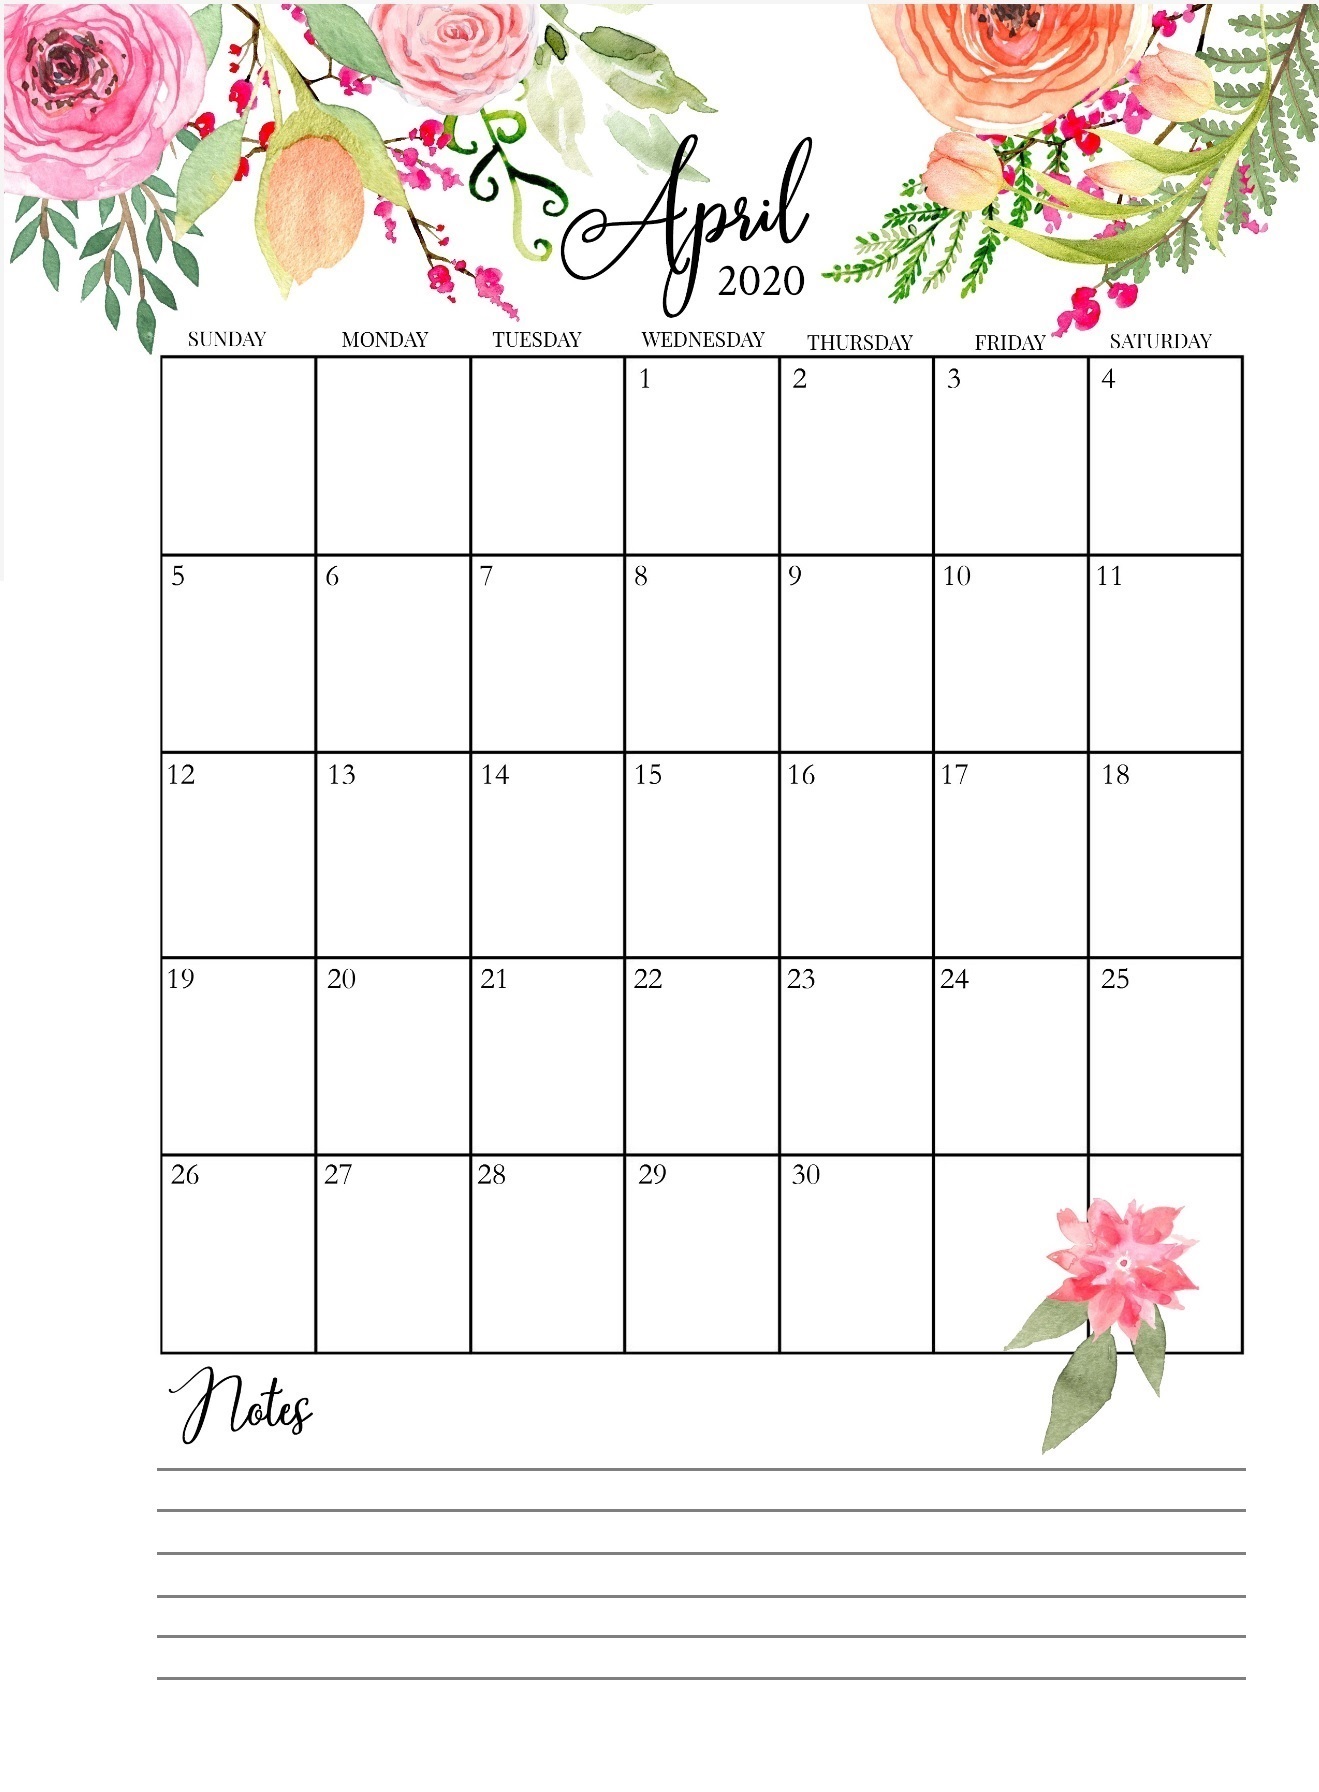 April 2020 Floral Wall Calendar